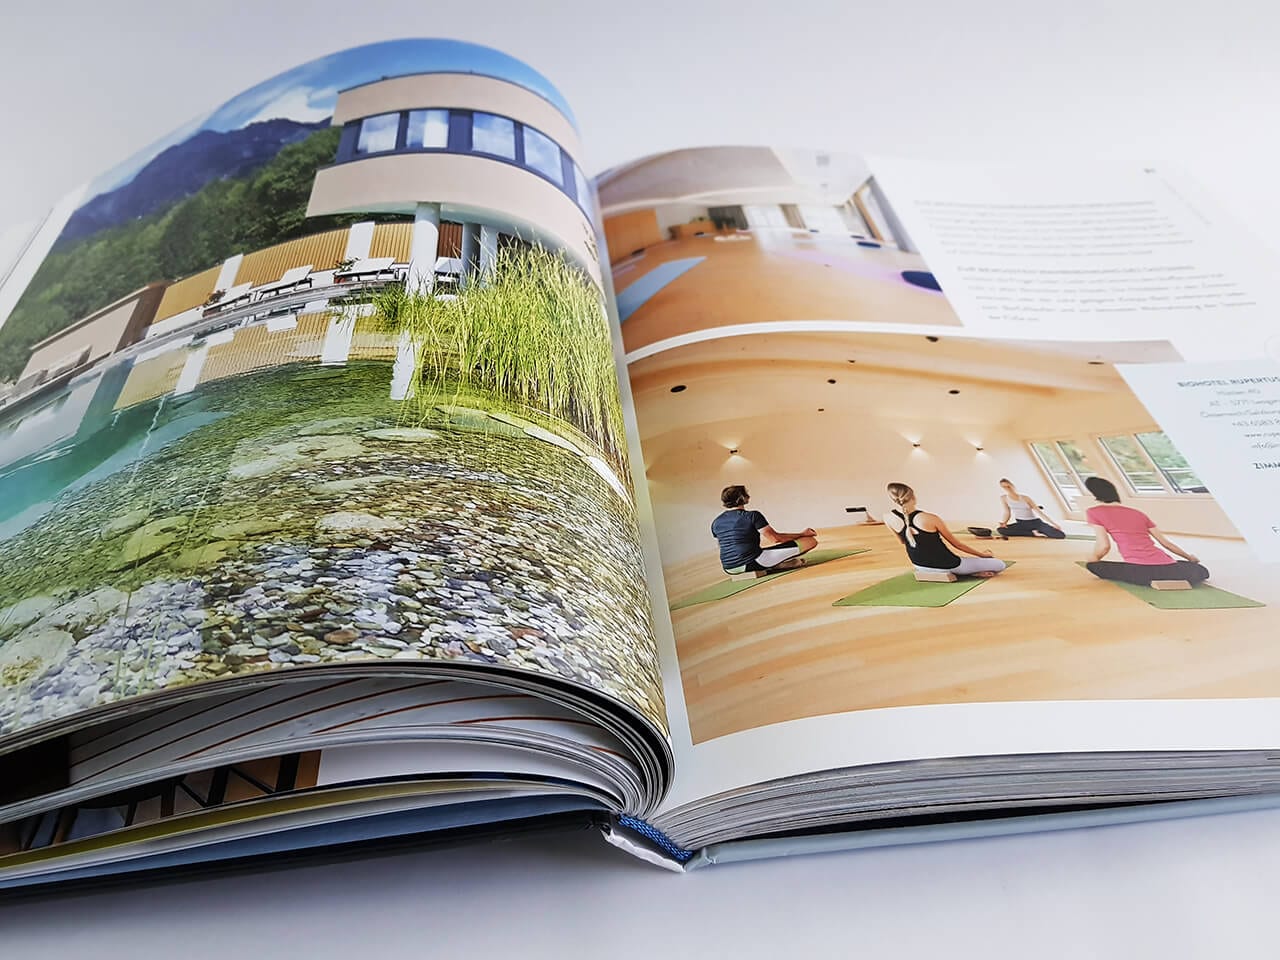 Mindful Die schönsten Yoga Hotels Callwey Verlag aufgeschlagener Bildband